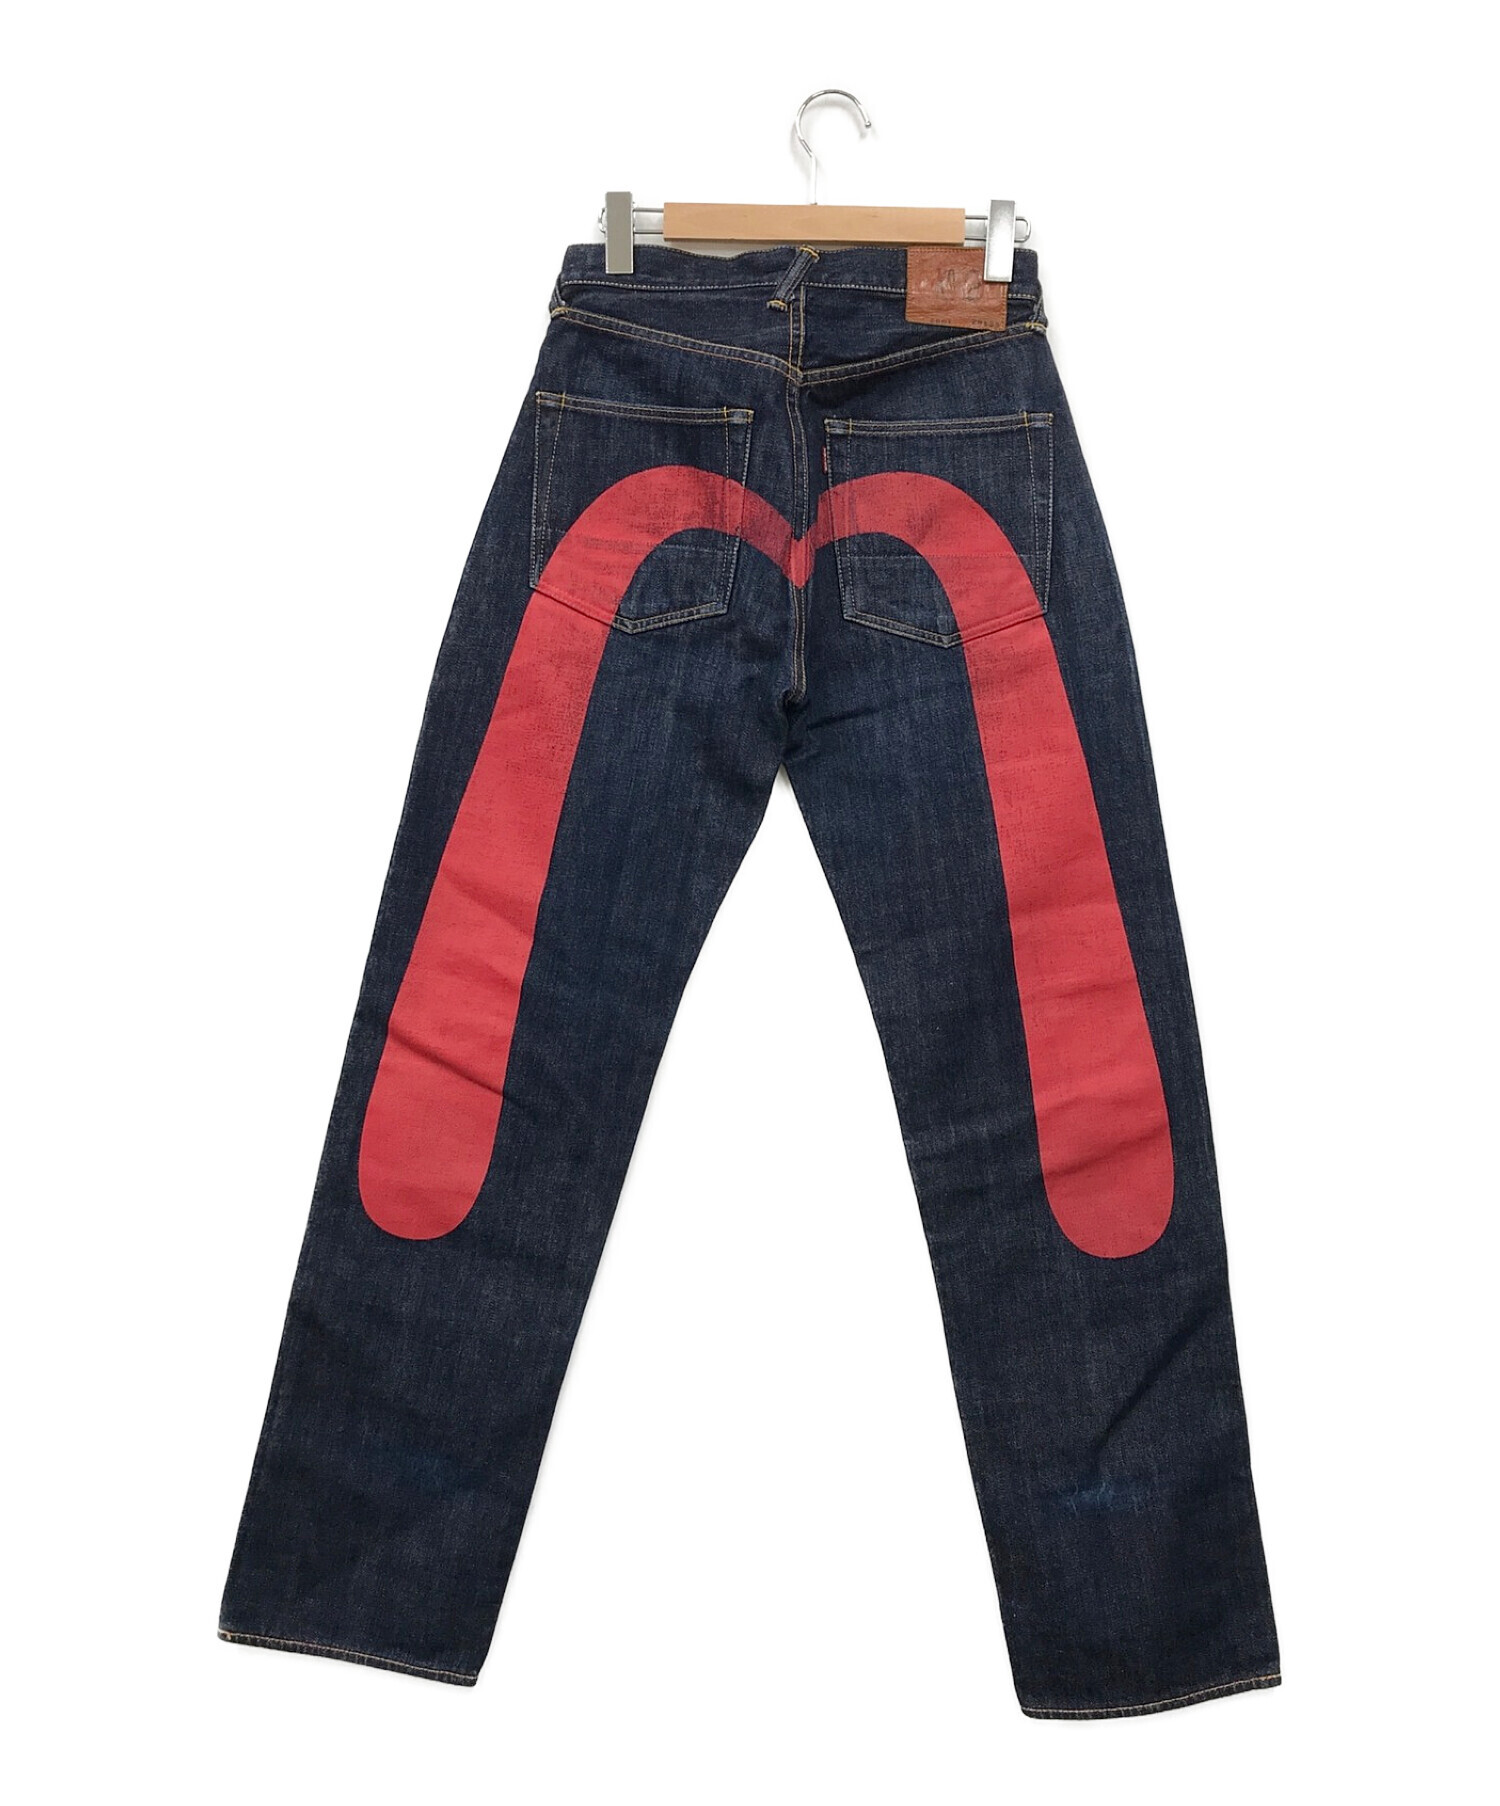 Evisu Jeans (エヴィスジーンズ) 2001ペイントデニムパンツ インディゴ サイズ:29×35